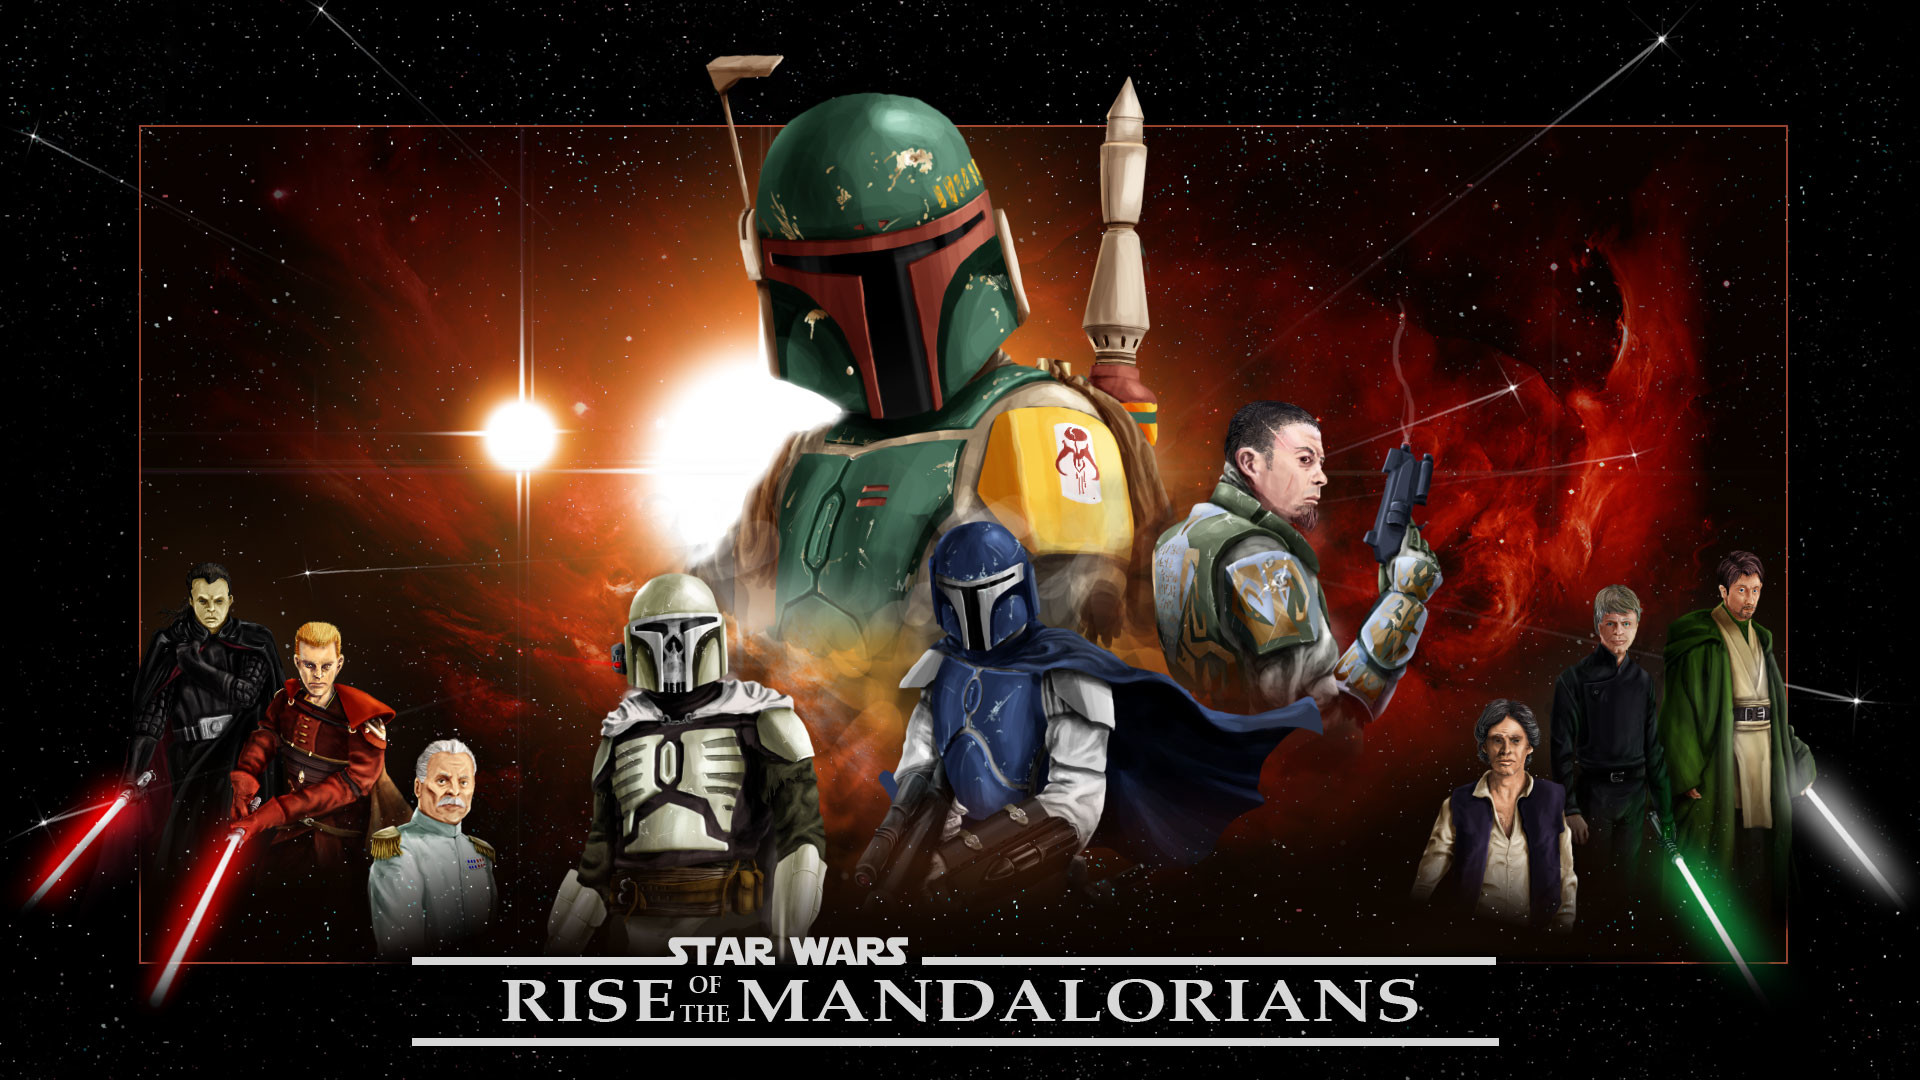 Star Wars Mandalorian 2 Wallpapers